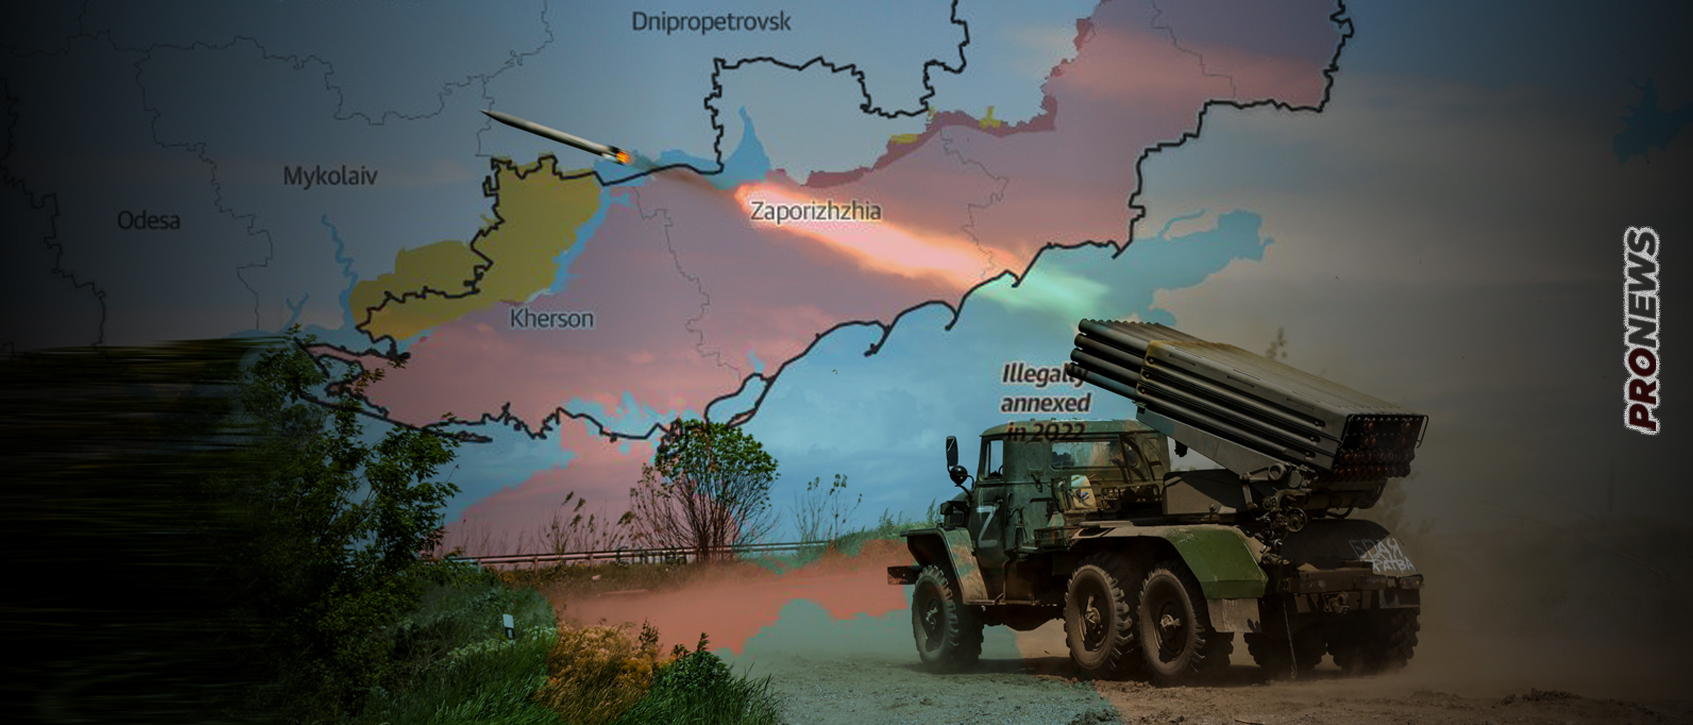 Βίντεο: Καταστροφή ουκρανικής δύναμης στην Ζαπορίζια από το Πυροβολικό μετά την κατάδειξή της από Ρώσους Spetsnaz